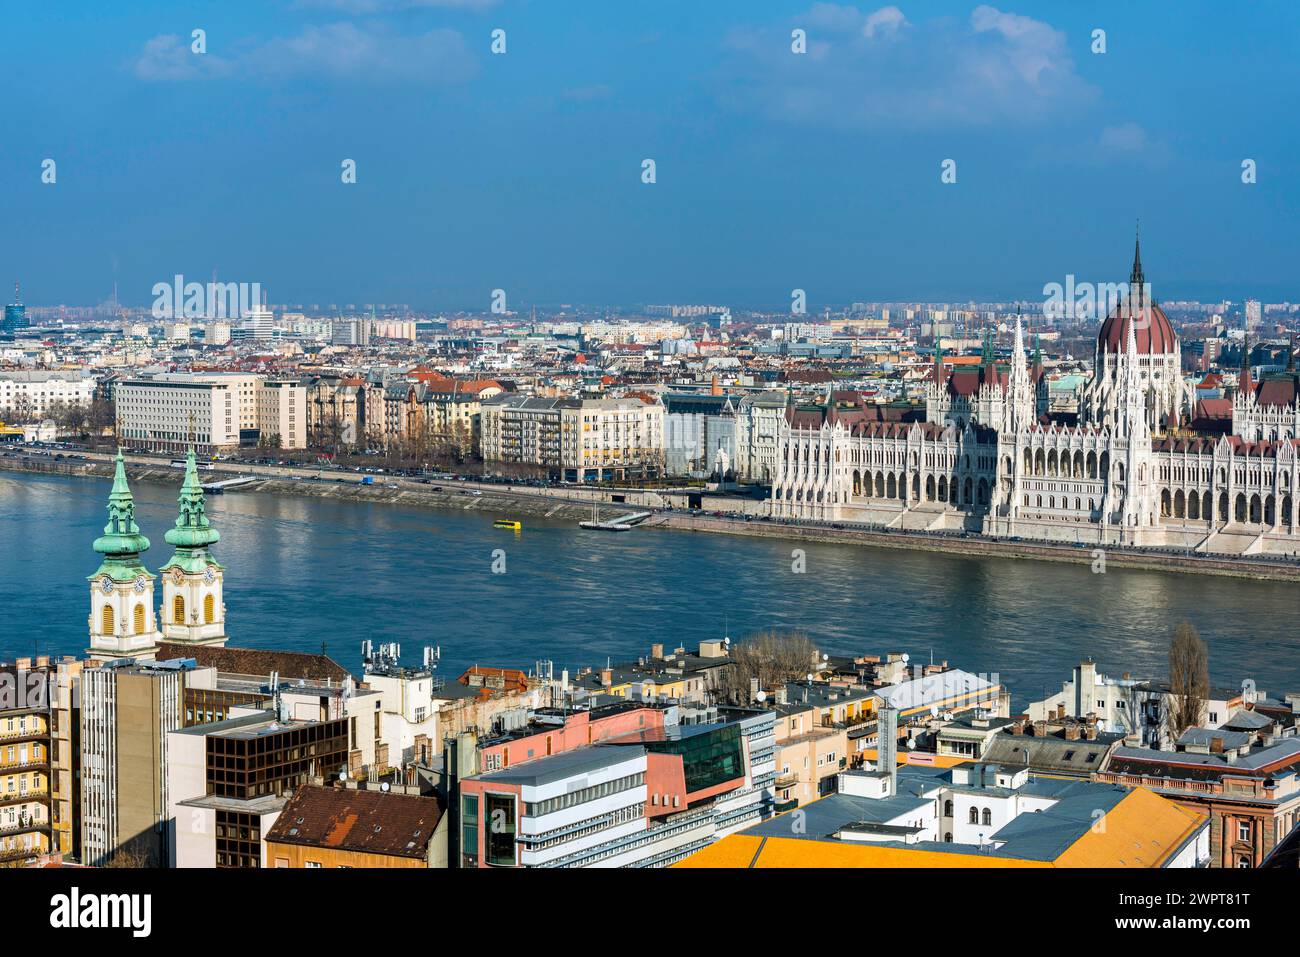 Die Donau und das Parlament, Politik, Stadtblick, Reisen, Städtereise, Tourismus, Übersicht, Osteuropa, Architektur, Gebäude, Attraktion Stockfoto